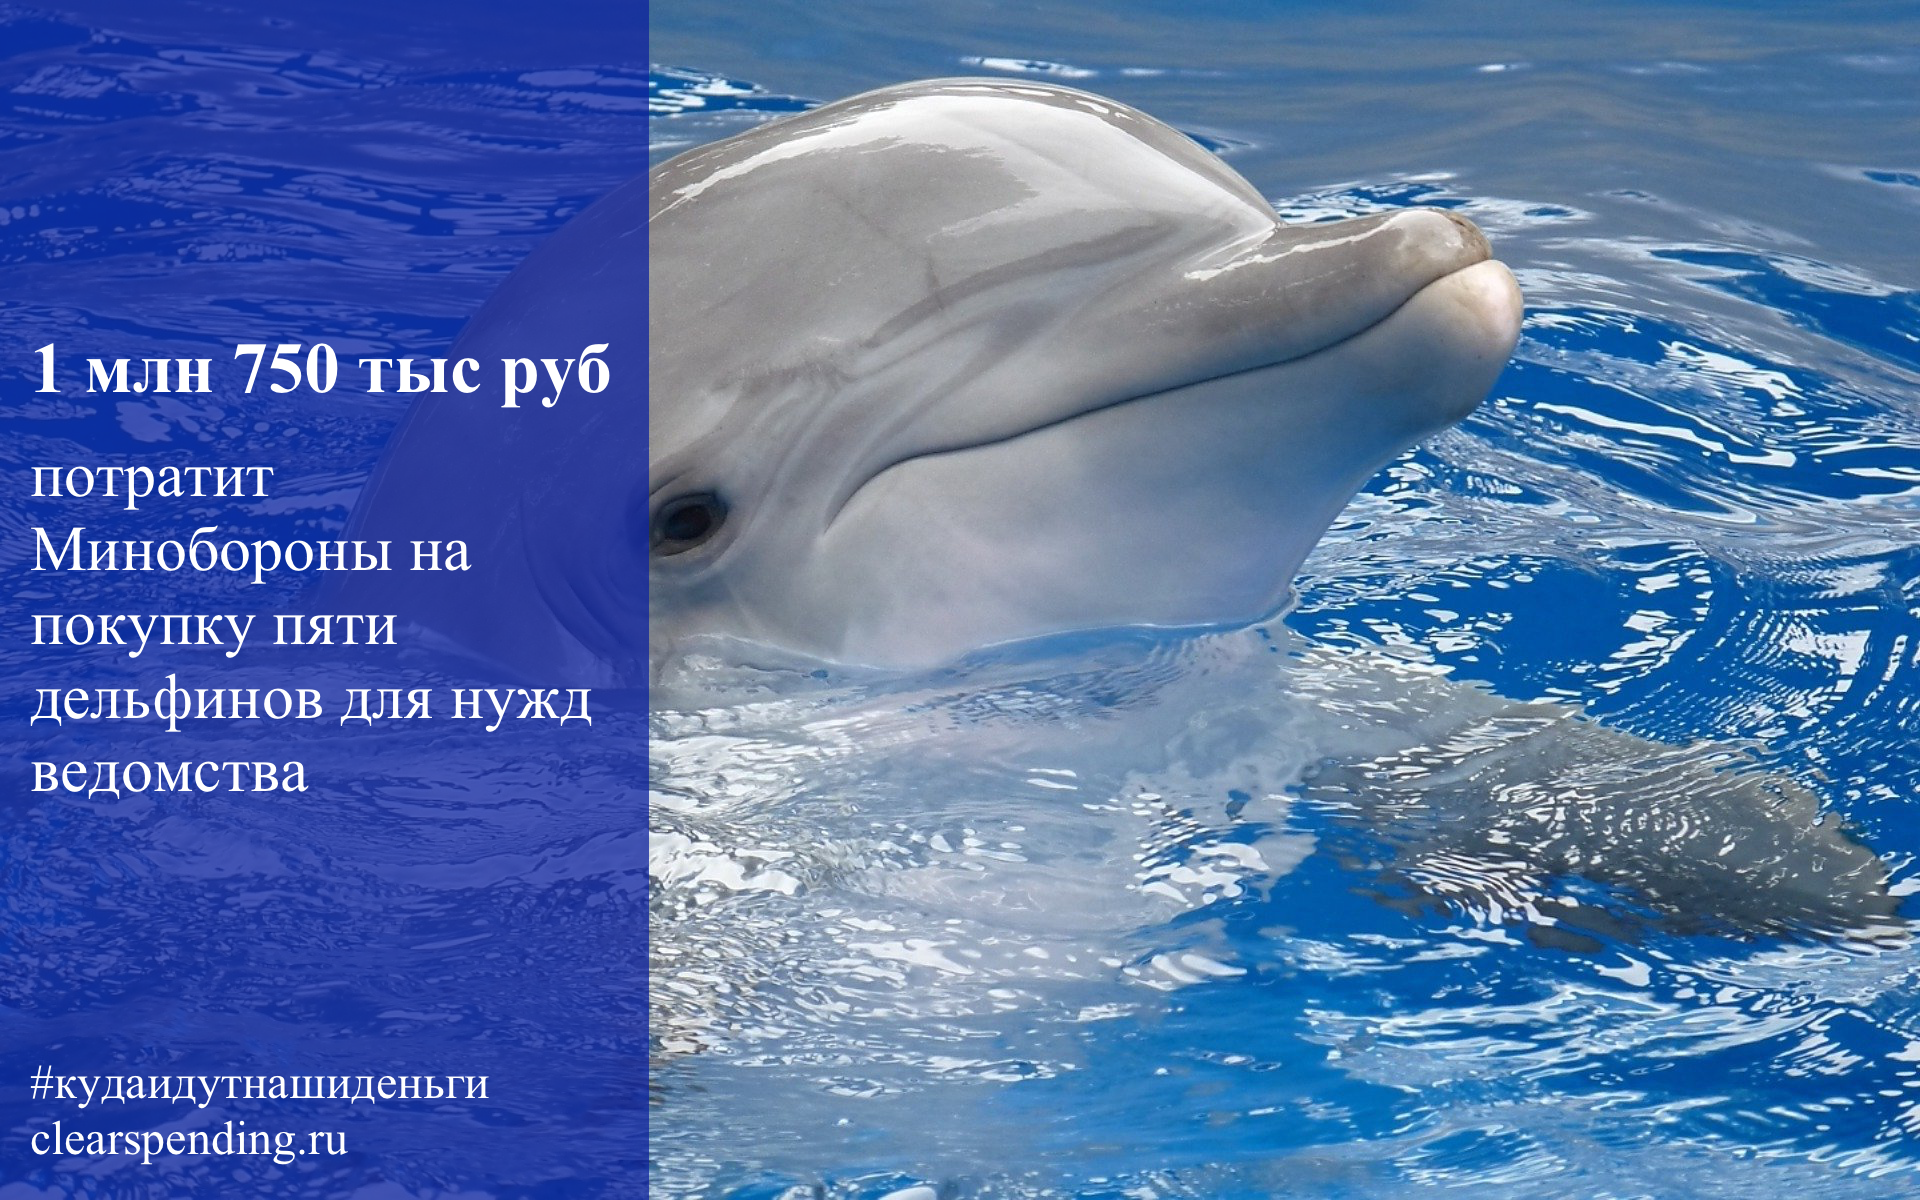 Дельфины – не рыбы и другие интересные факты об этих китообразных